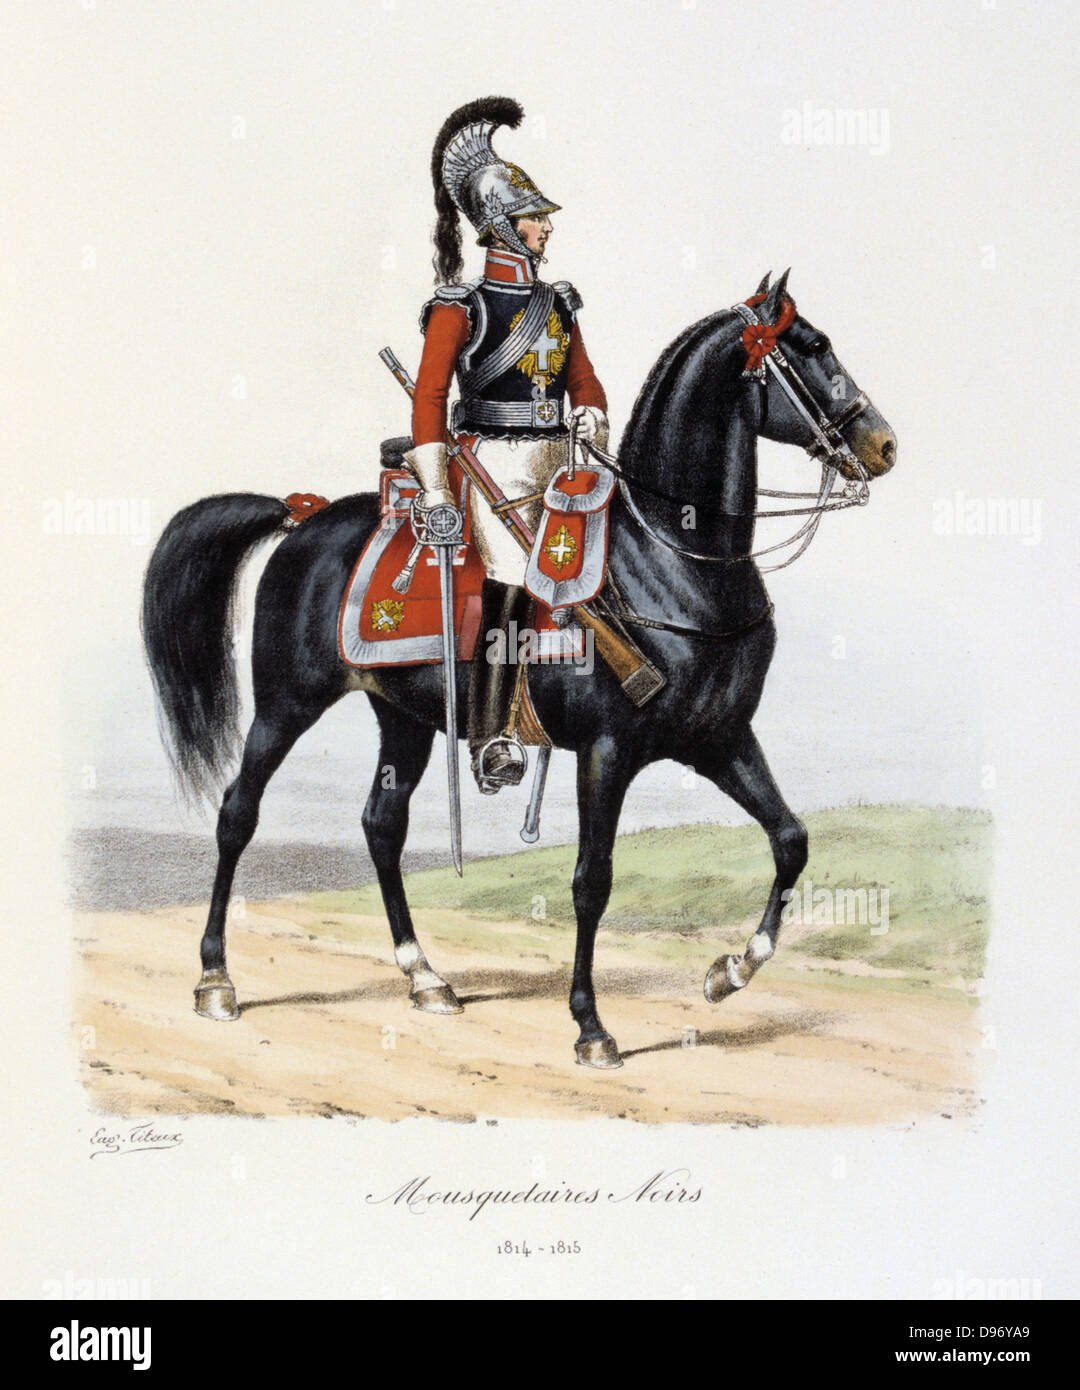 Mounted Black Musketeer, 1814-1815. From 'Histoire de la maison militaire du Roi de 1814 a 1830' by Eugene Titeux, Paris, 1890. Stock Photo